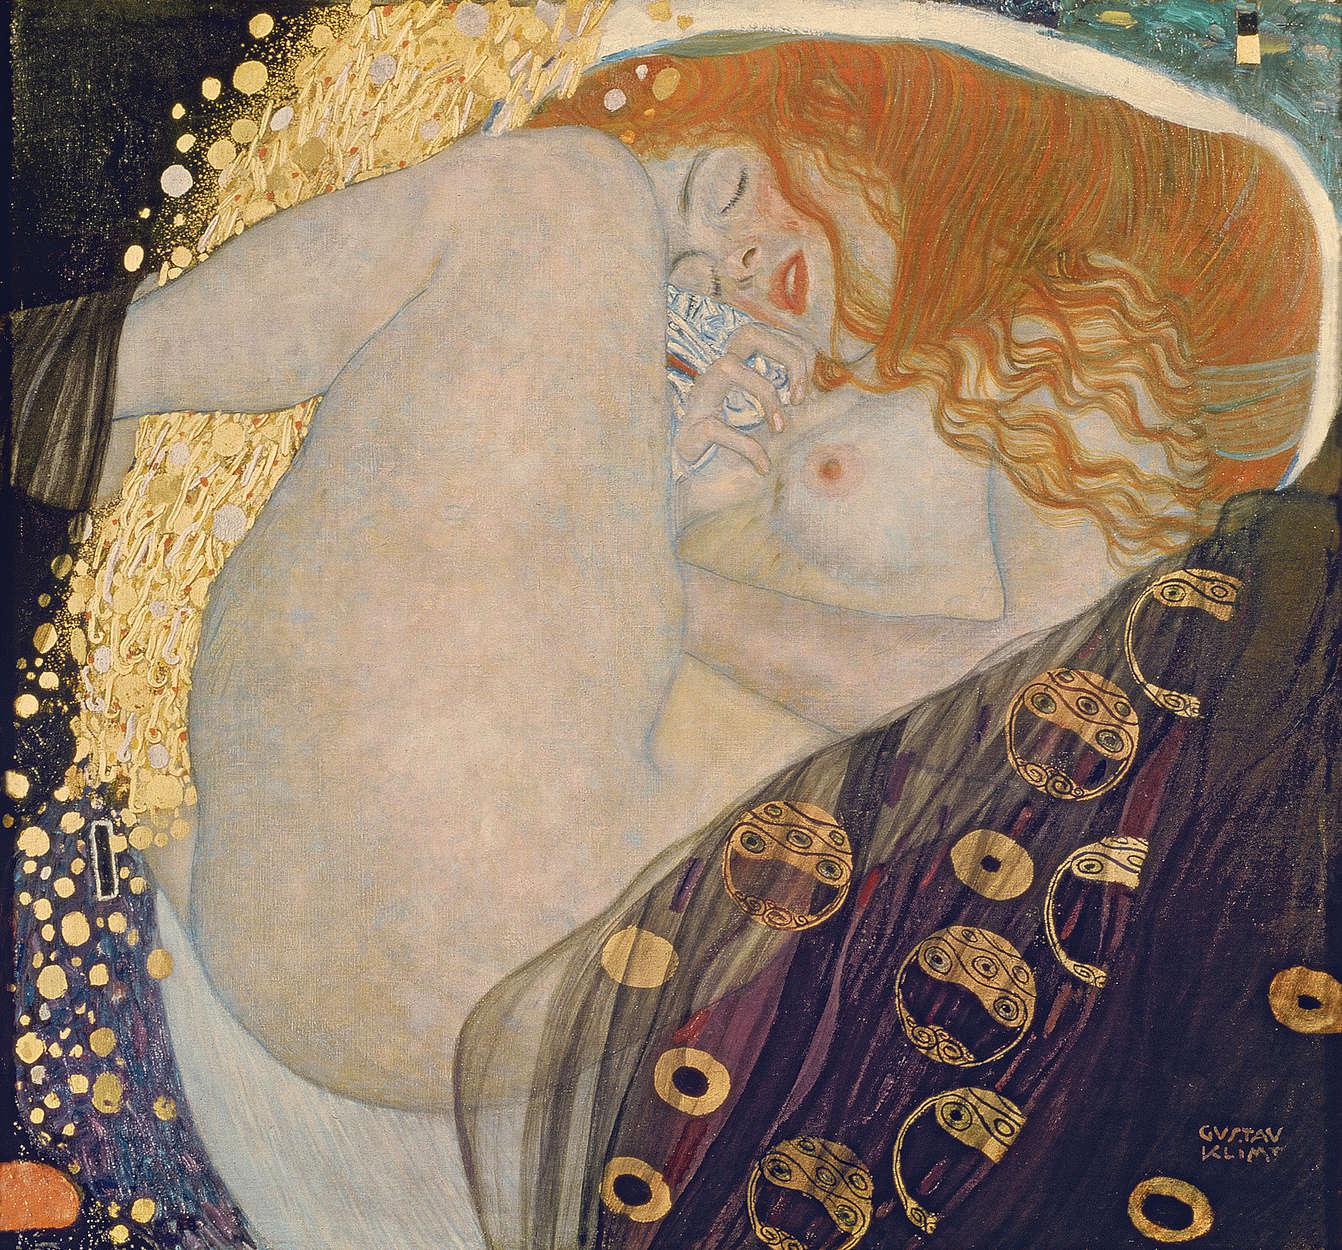             Mural "Danae" de Gustav Klimt
        